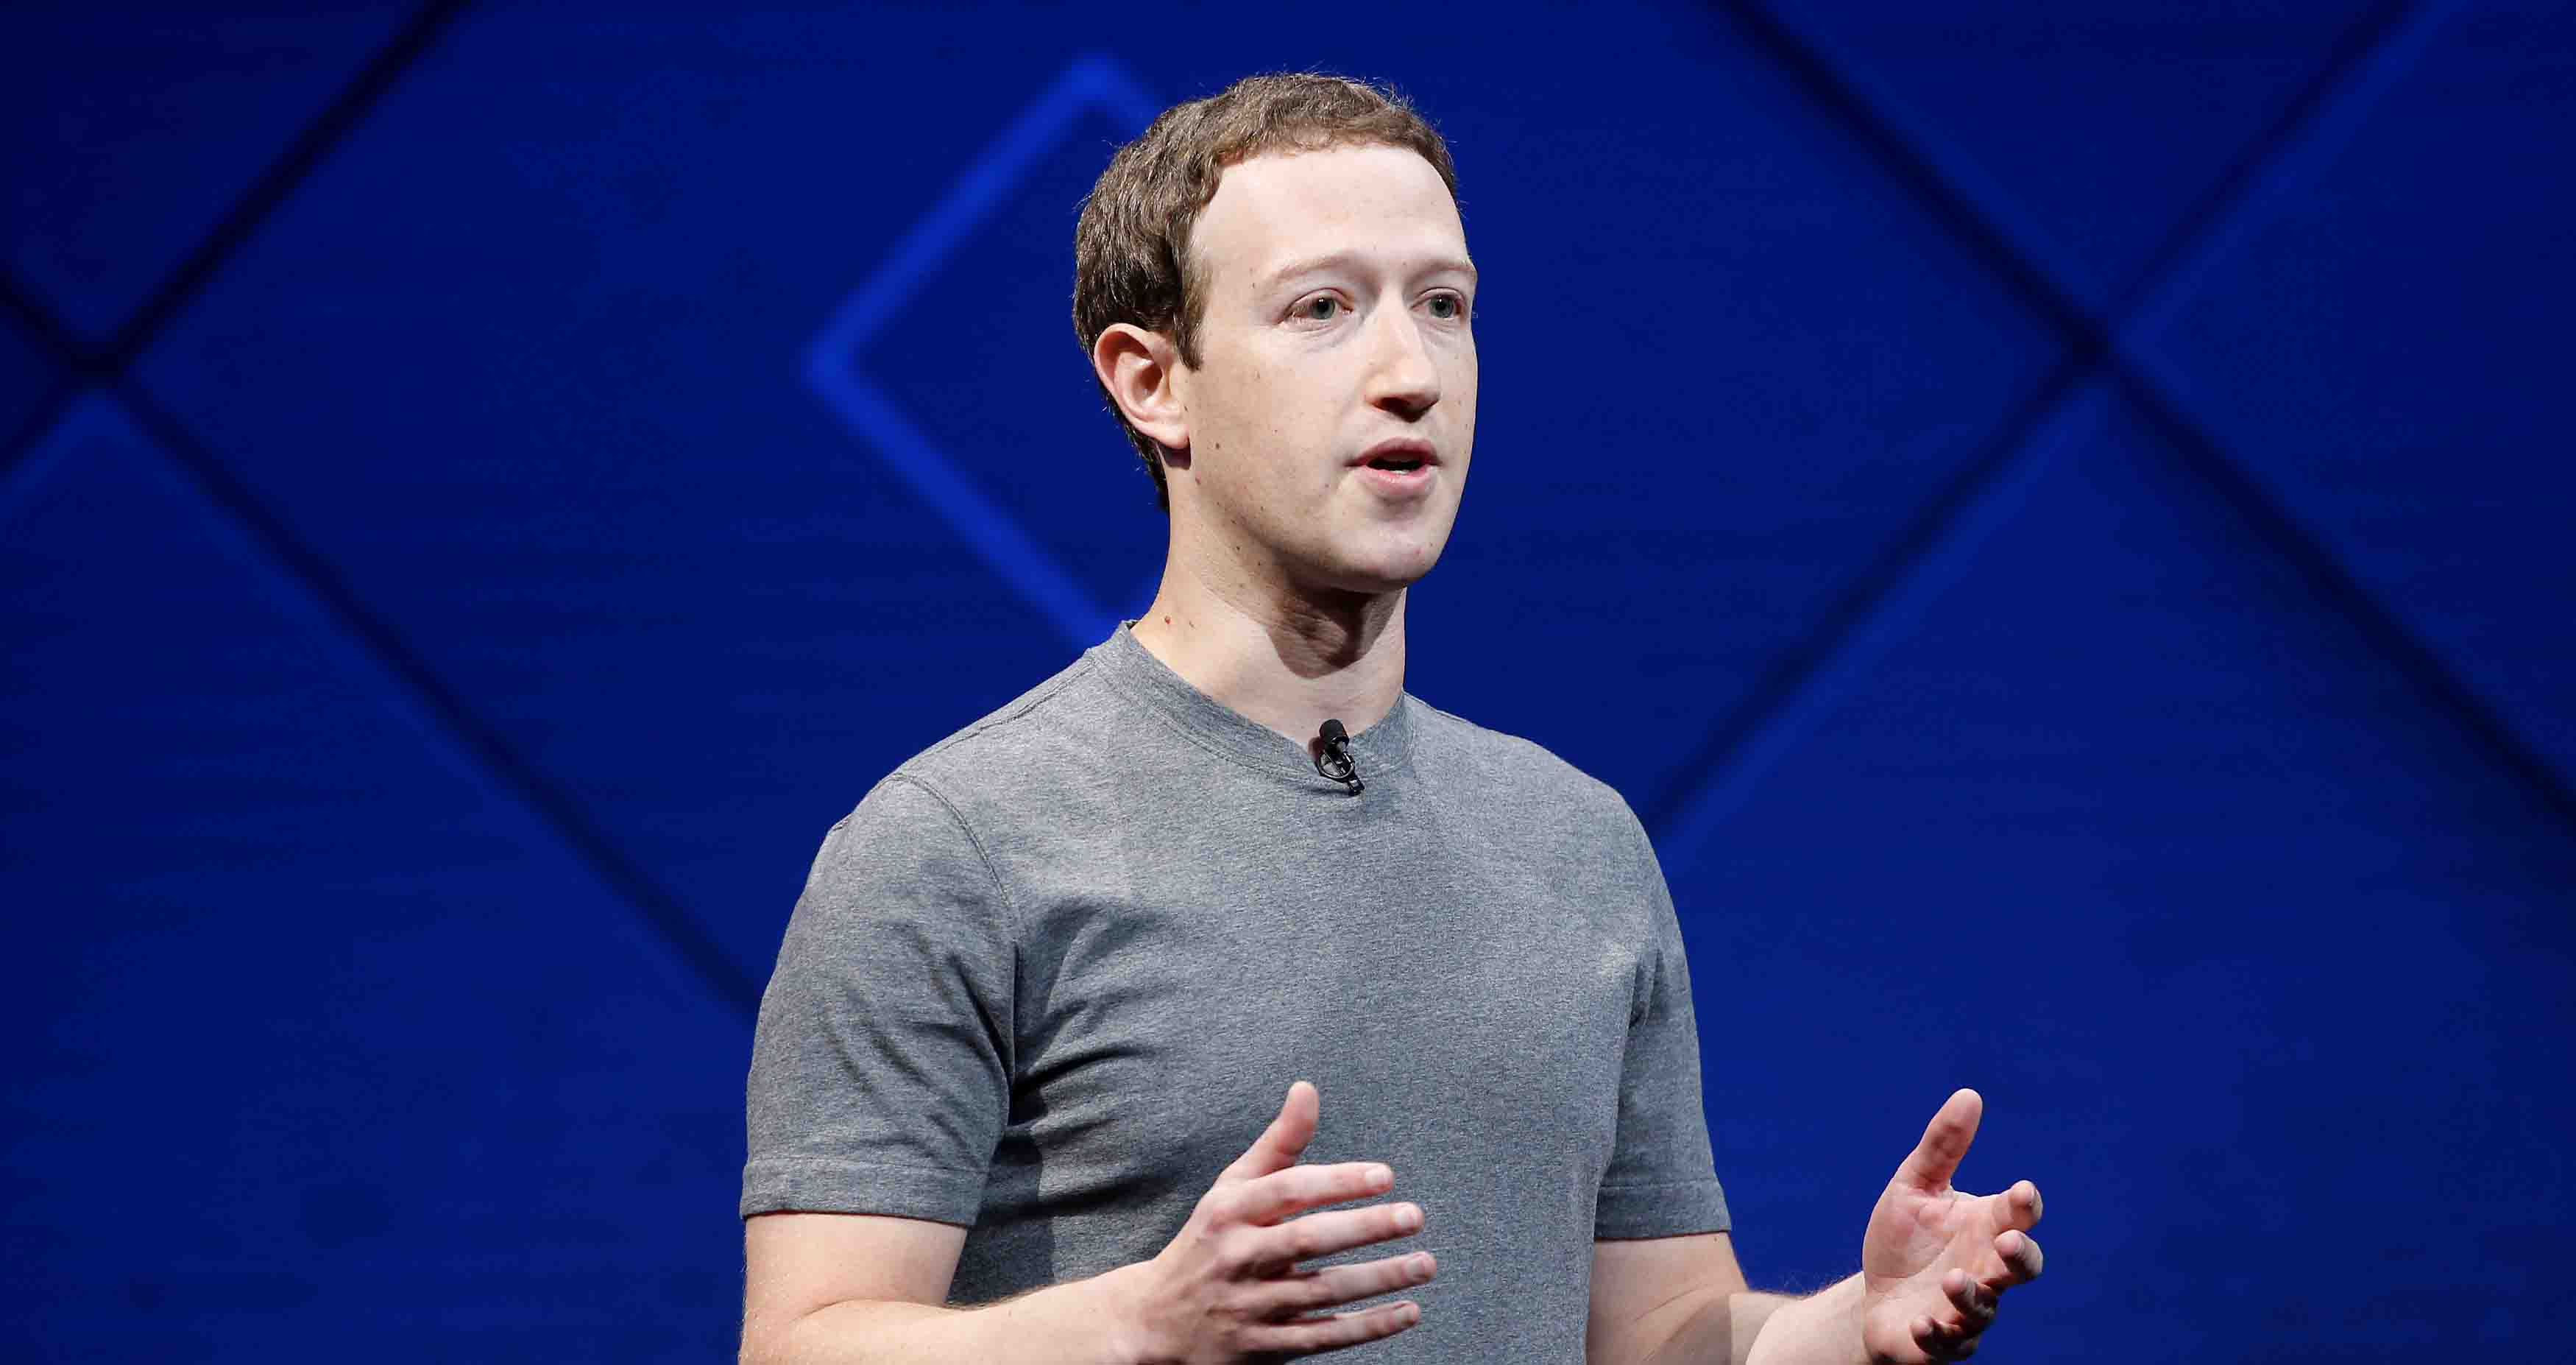 La compañía de Mark Zuckerberg está diseñando un mecanismo que envíe pensamientos sin necesidad de usar el teclado